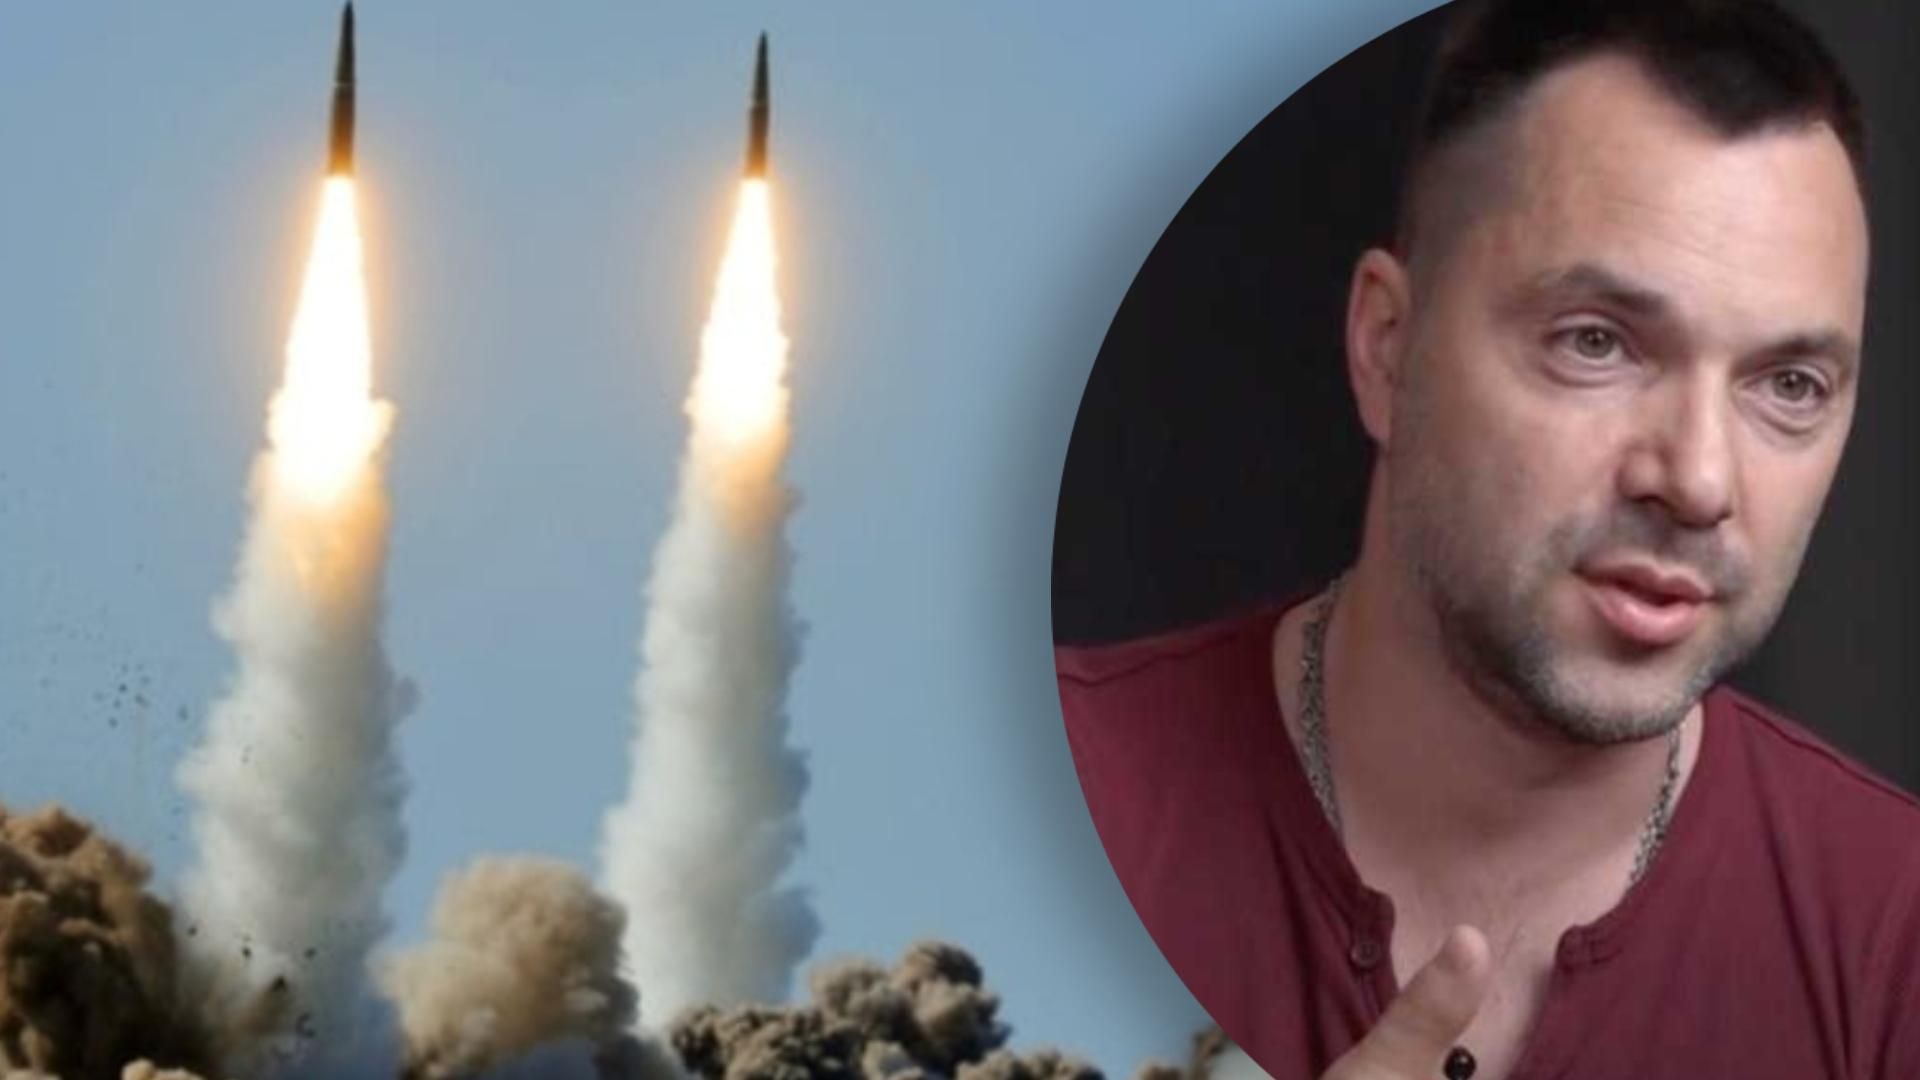 росія ніколи не зможе випустити 48 ракет - Арестович розповів про фейк росіян